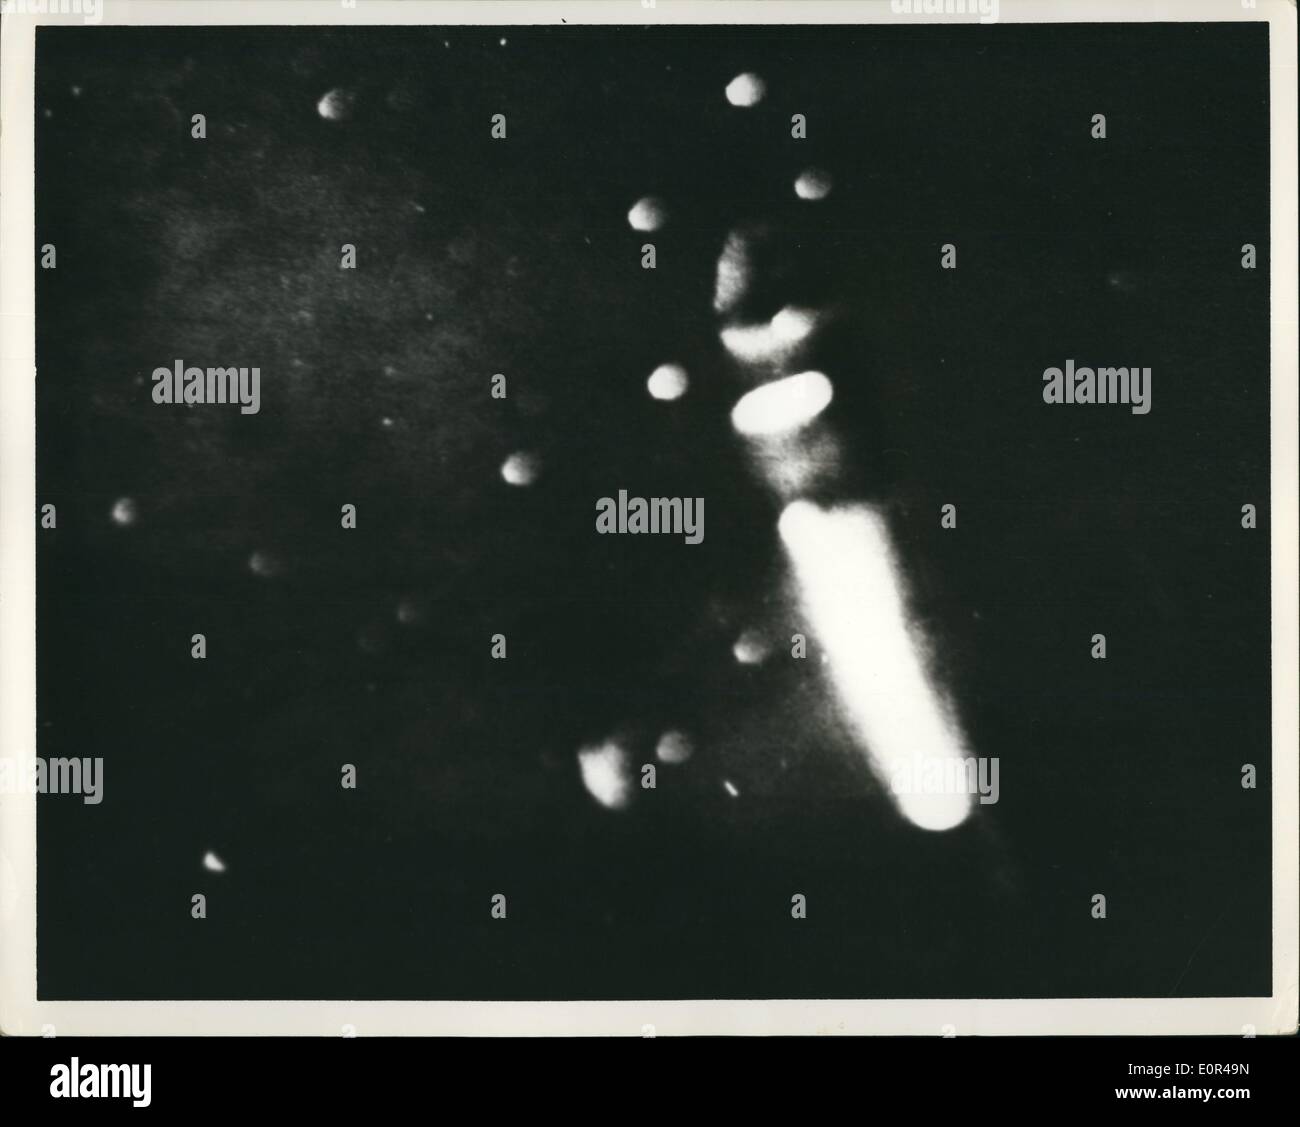 12. Dezember 1957 - förmigen Zigarre Objekt gesichtet und fotografiert von Astronom Ralph Nicholson von Patterson New Jersey. Foto wurde am 12. Dezember 1957. Stockfoto